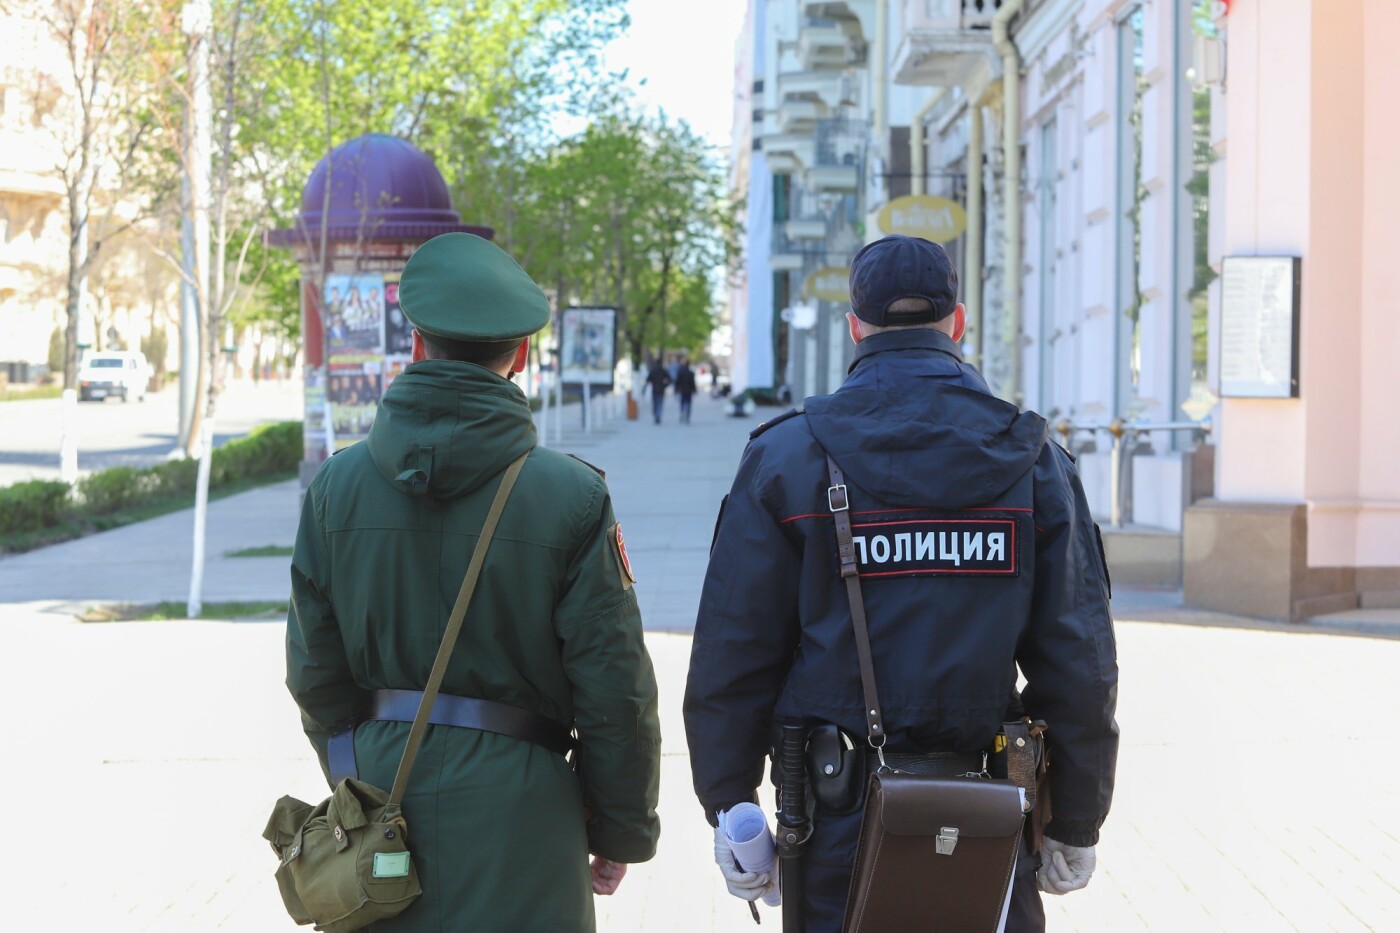 Коронавирусные патрули, которые проверяли право находиться на улицах у ростовчан